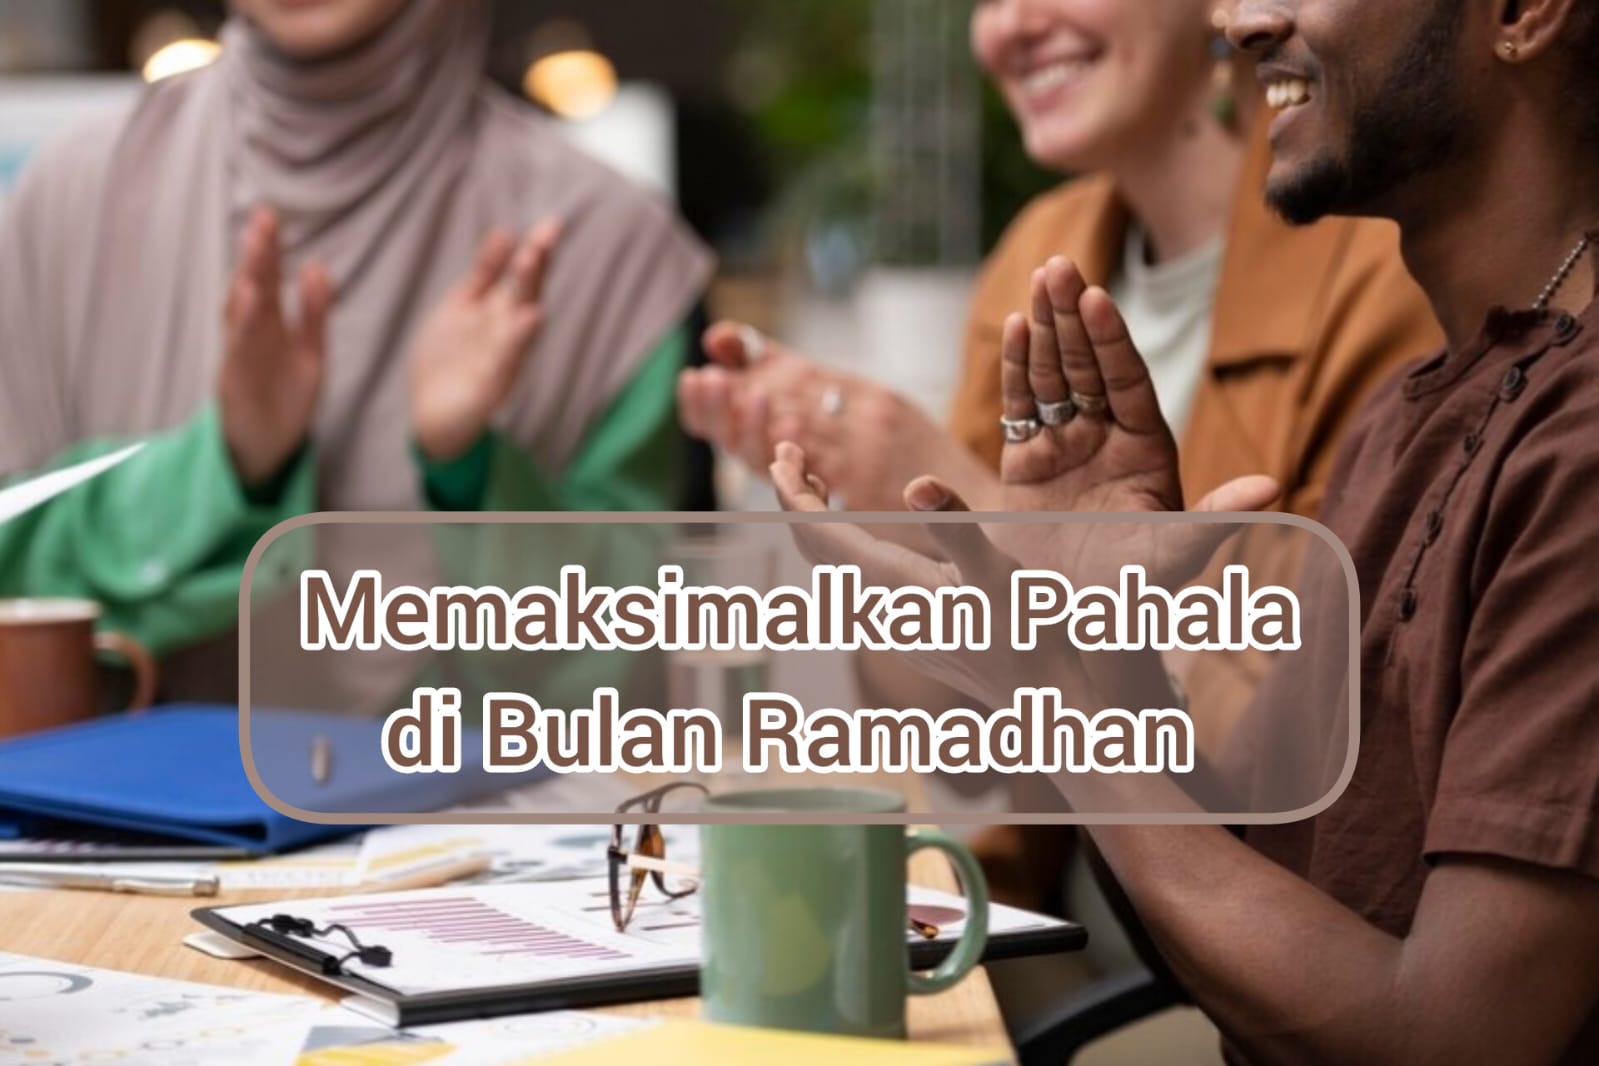 Ini Dia 3 Cara Memaksimalkan Pahala di Bulan Ramadhan, Rugi Banget Kalau Sampai Terlewat!